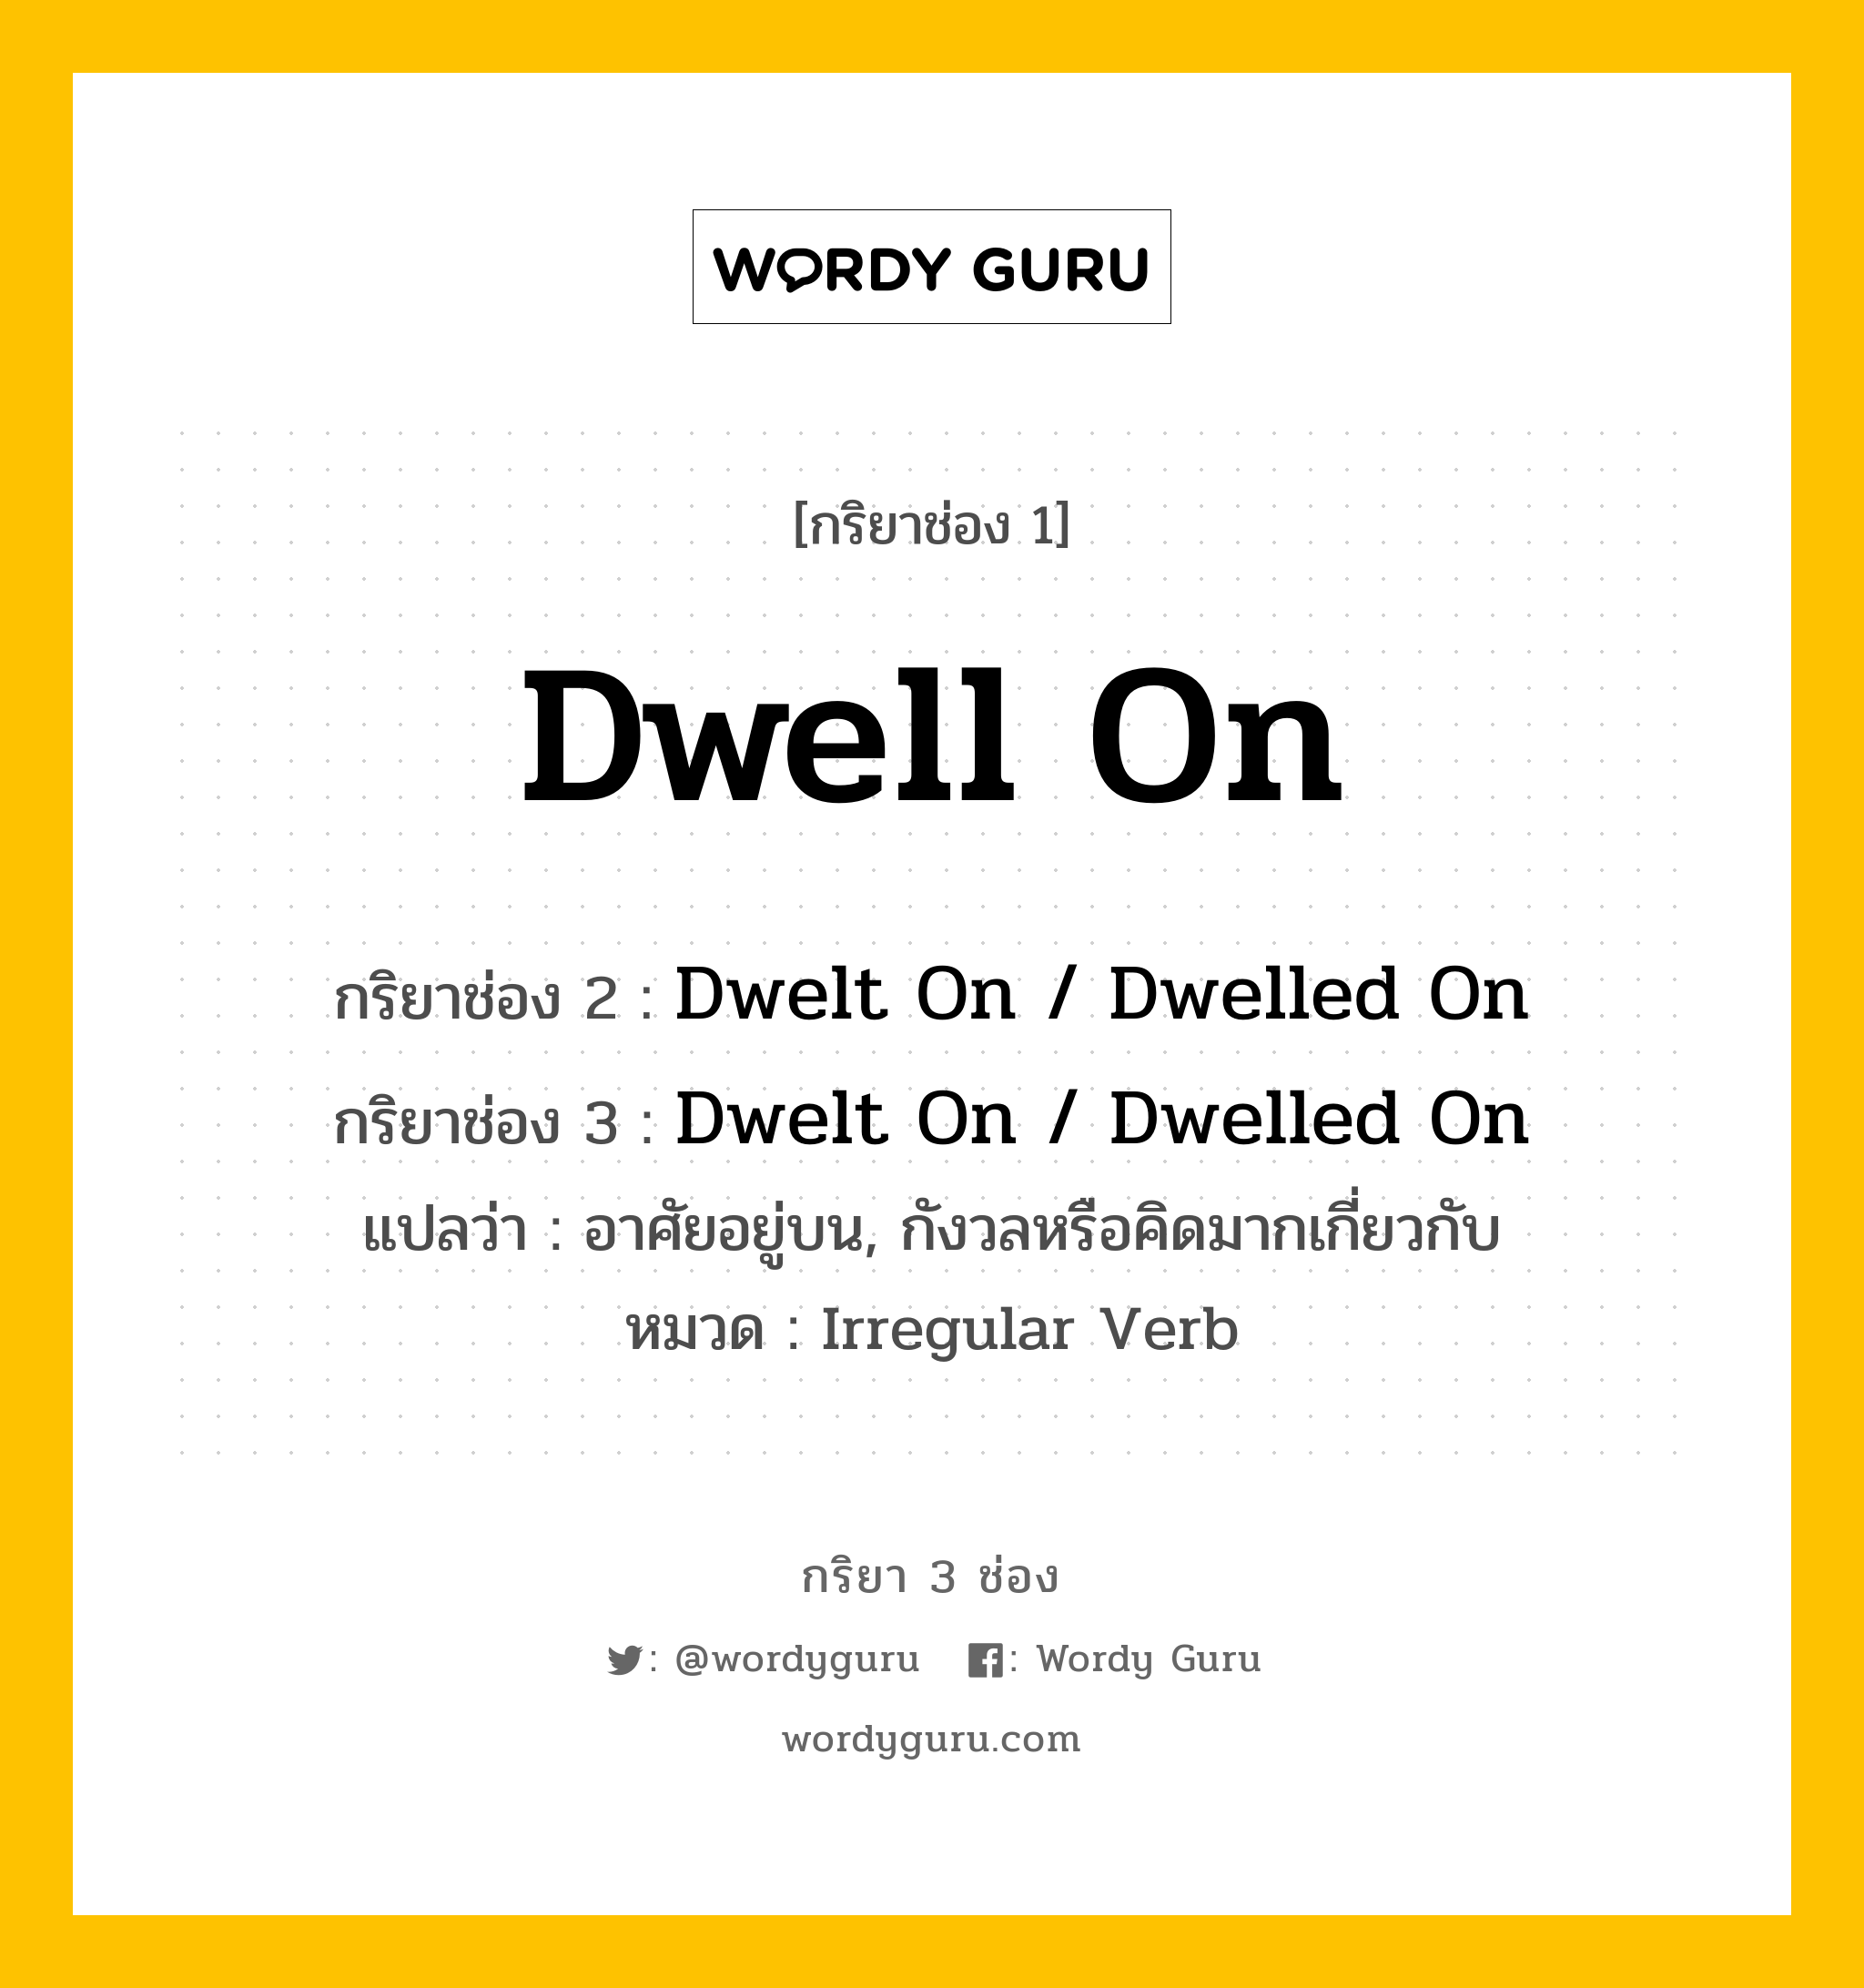 Dwell On มีกริยา 3 ช่องอะไรบ้าง? คำศัพท์ในกลุ่มประเภท Irregular Verb, กริยาช่อง 1 Dwell On กริยาช่อง 2 Dwelt On / Dwelled On กริยาช่อง 3 Dwelt On / Dwelled On แปลว่า อาศัยอยู่บน, กังวลหรือคิดมากเกี่ยวกับ หมวด Irregular Verb หมวด Irregular Verb